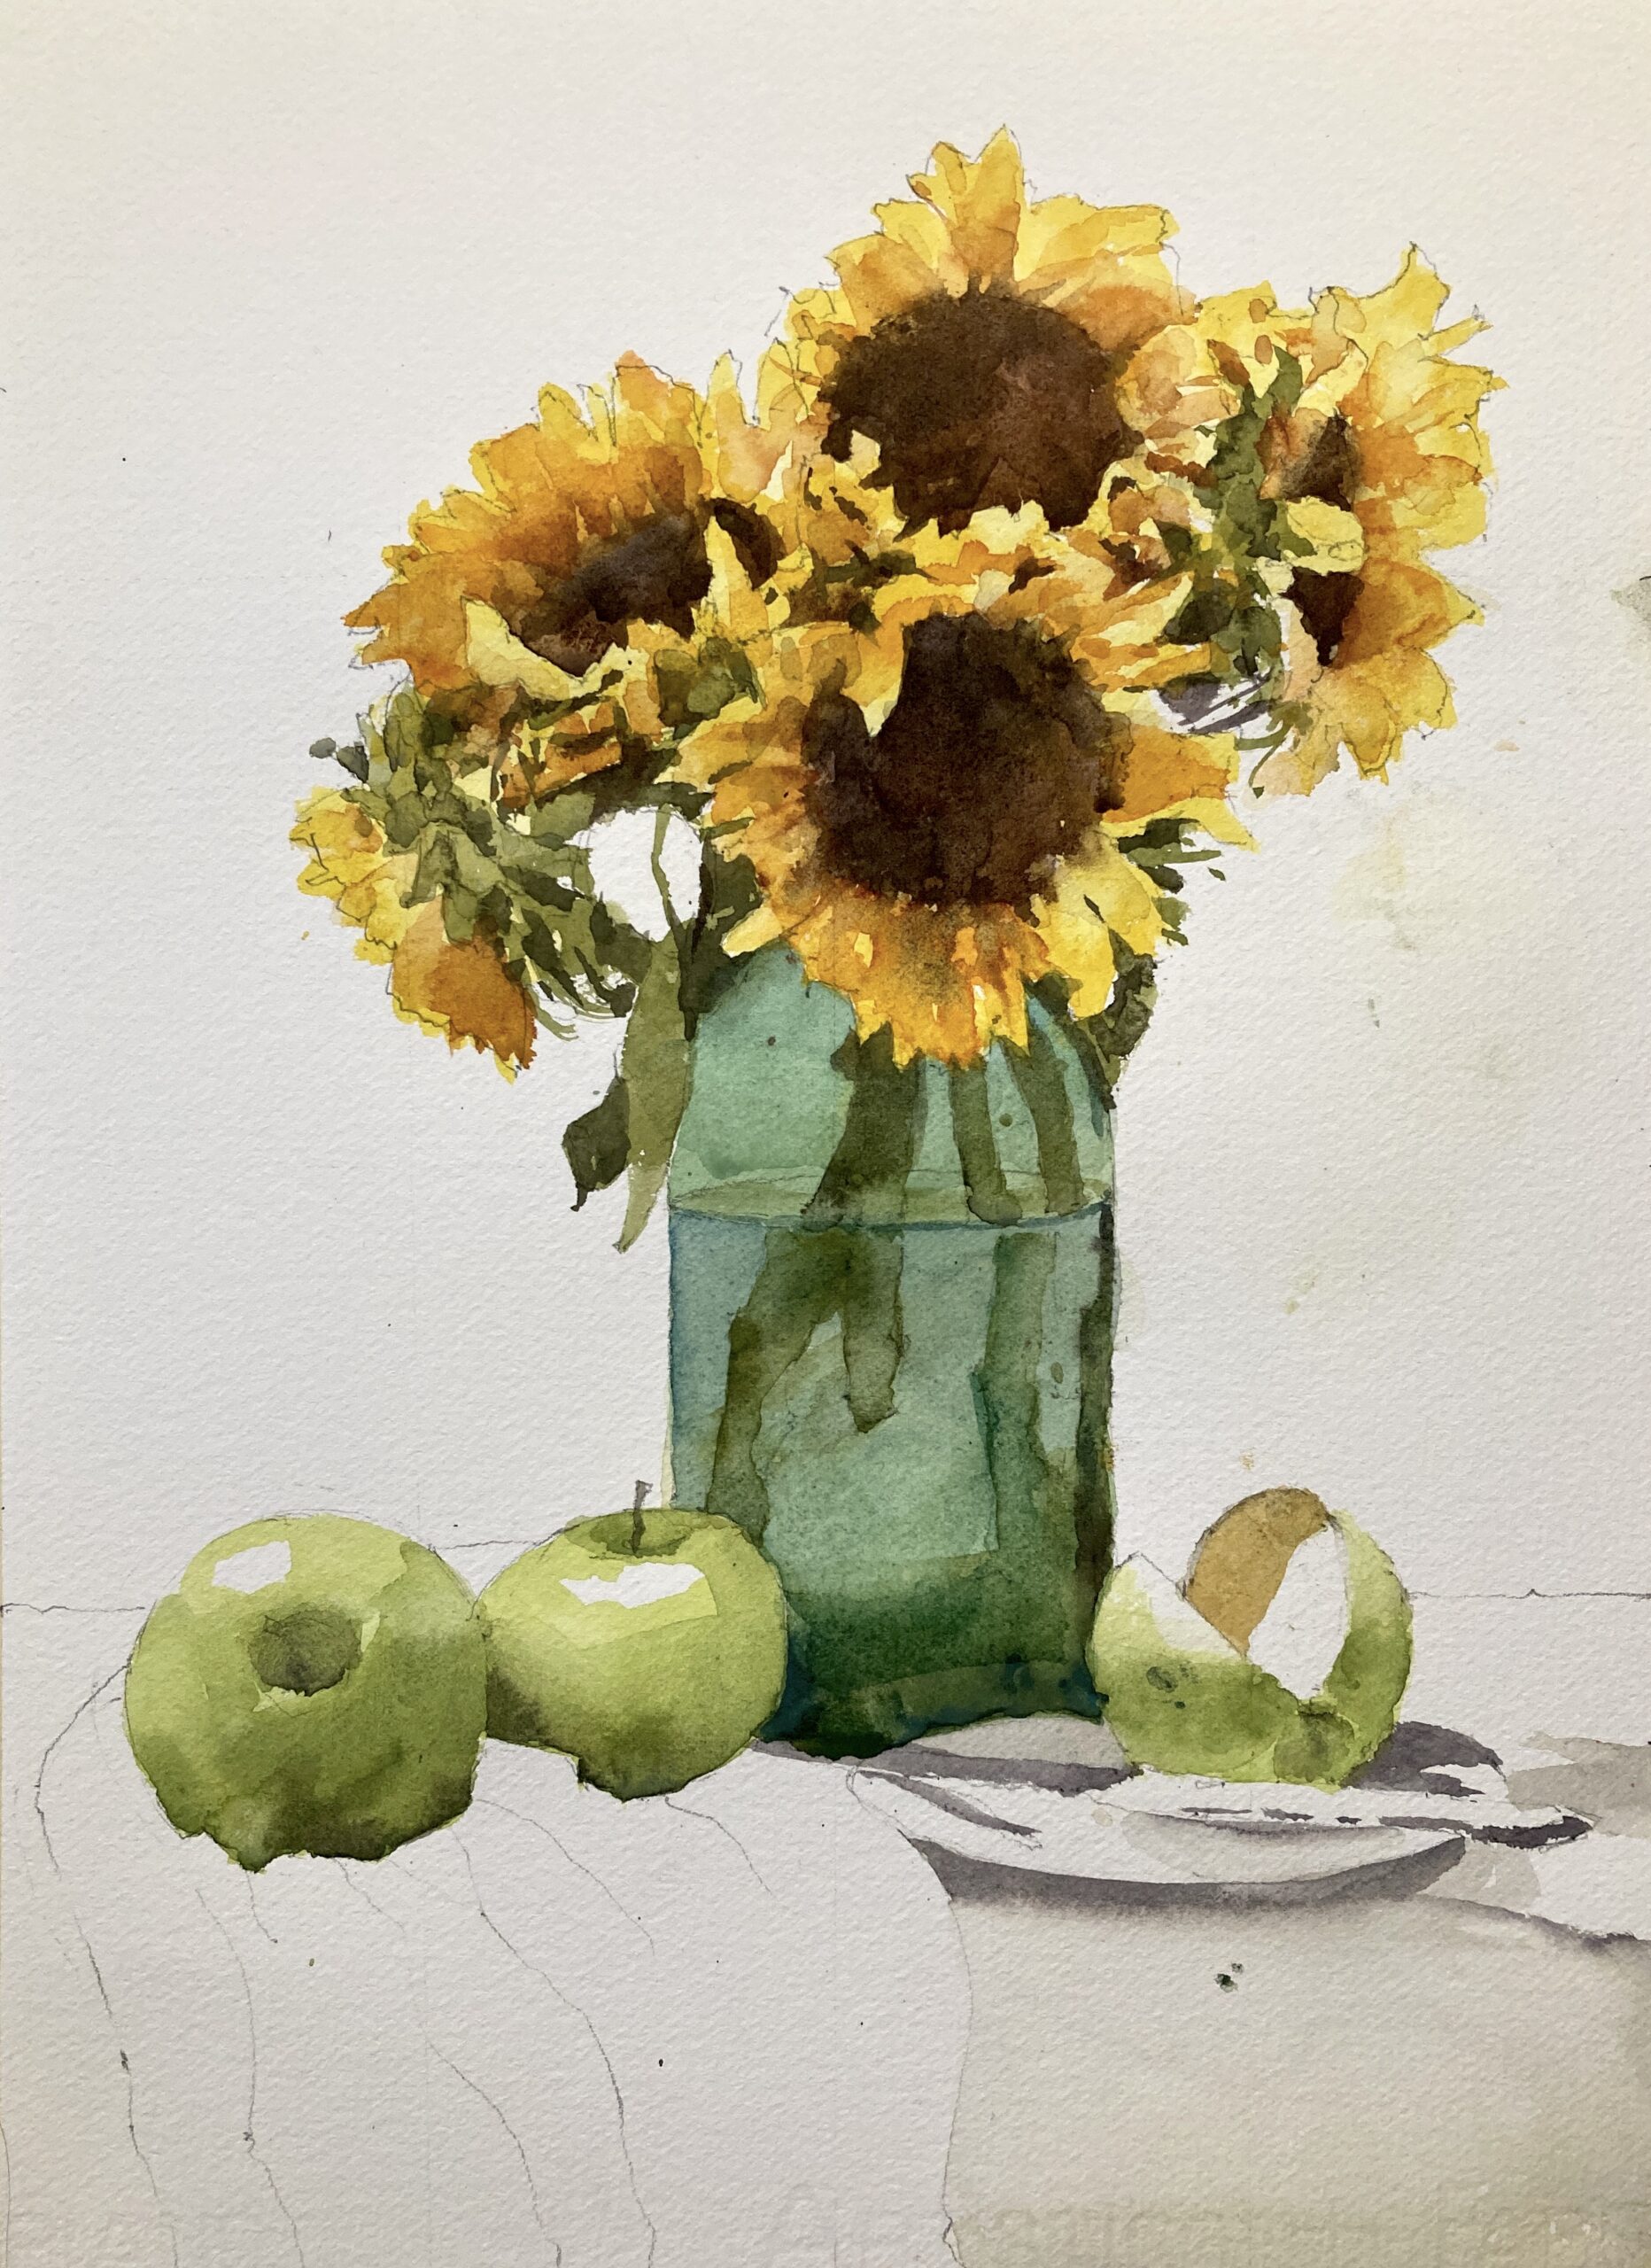 Sunflowers in Progress